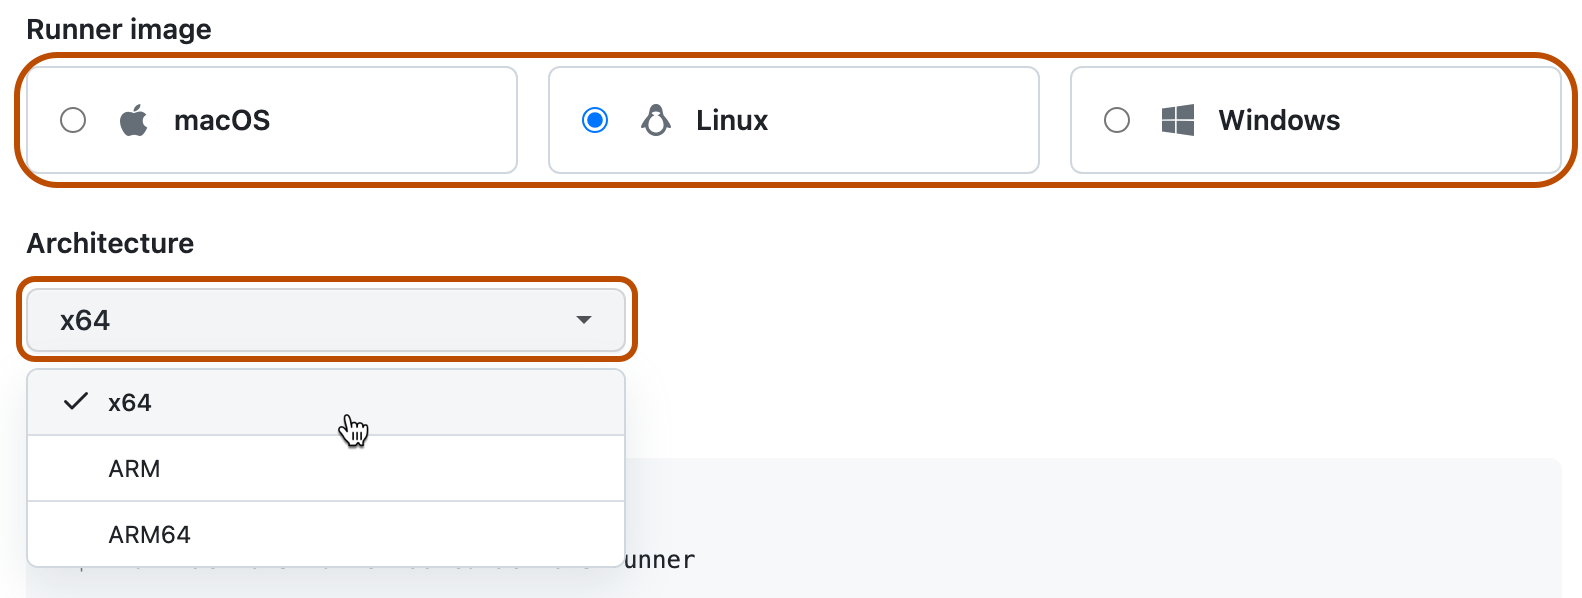 Captura de tela da escolha do sistema operacional e da arquitetura. Essas opções são realçadas com um contorno laranja escuro.